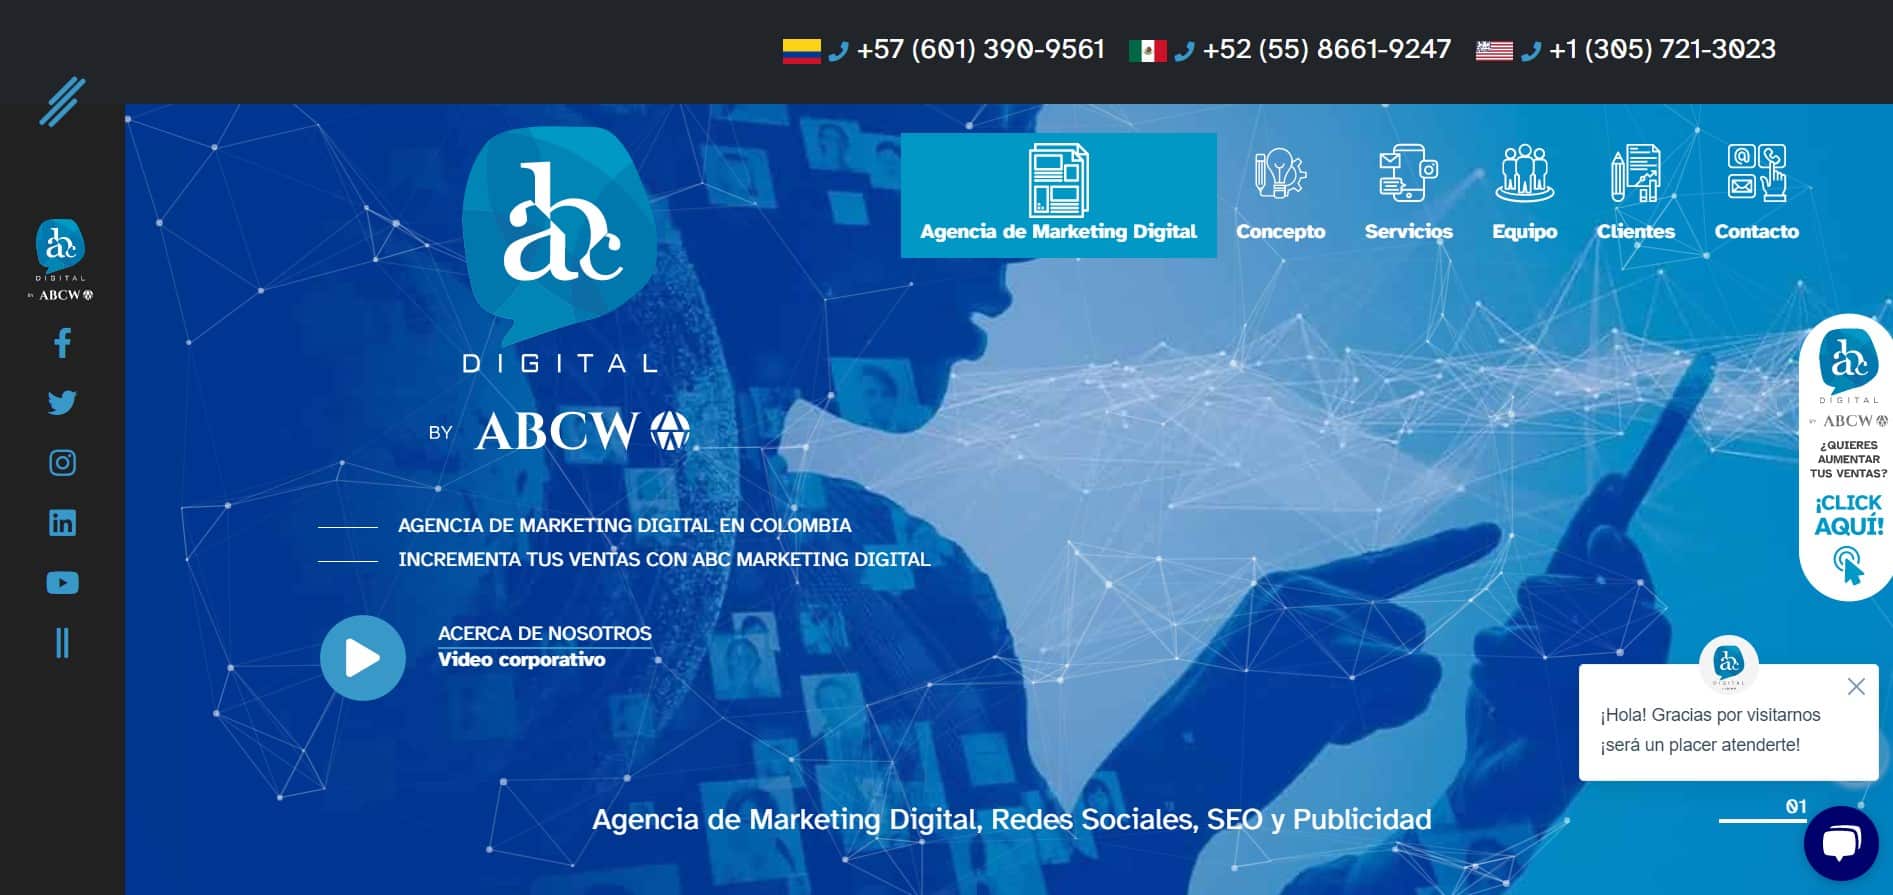 agencia de marketing en colombia ABC